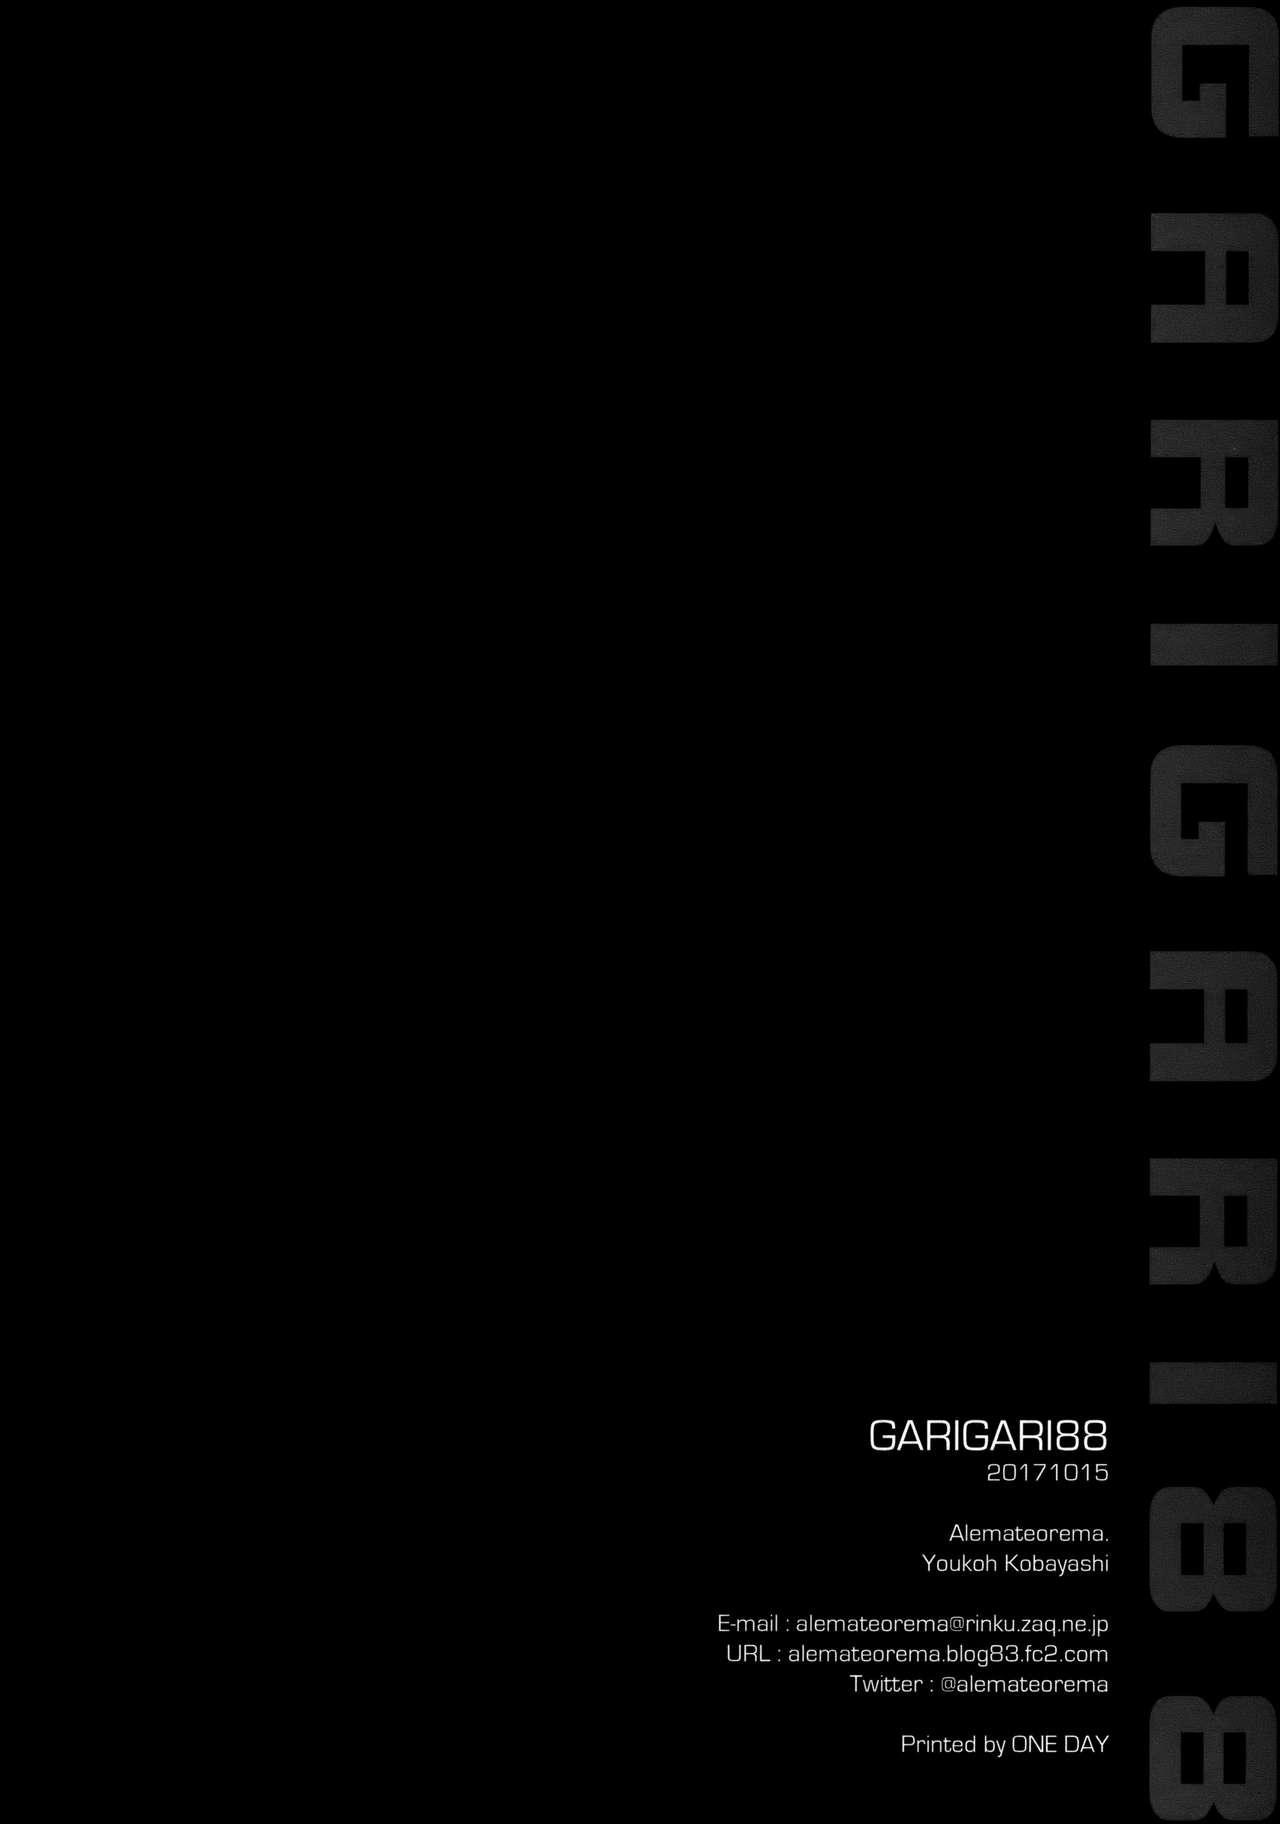 GARIGARI88 20